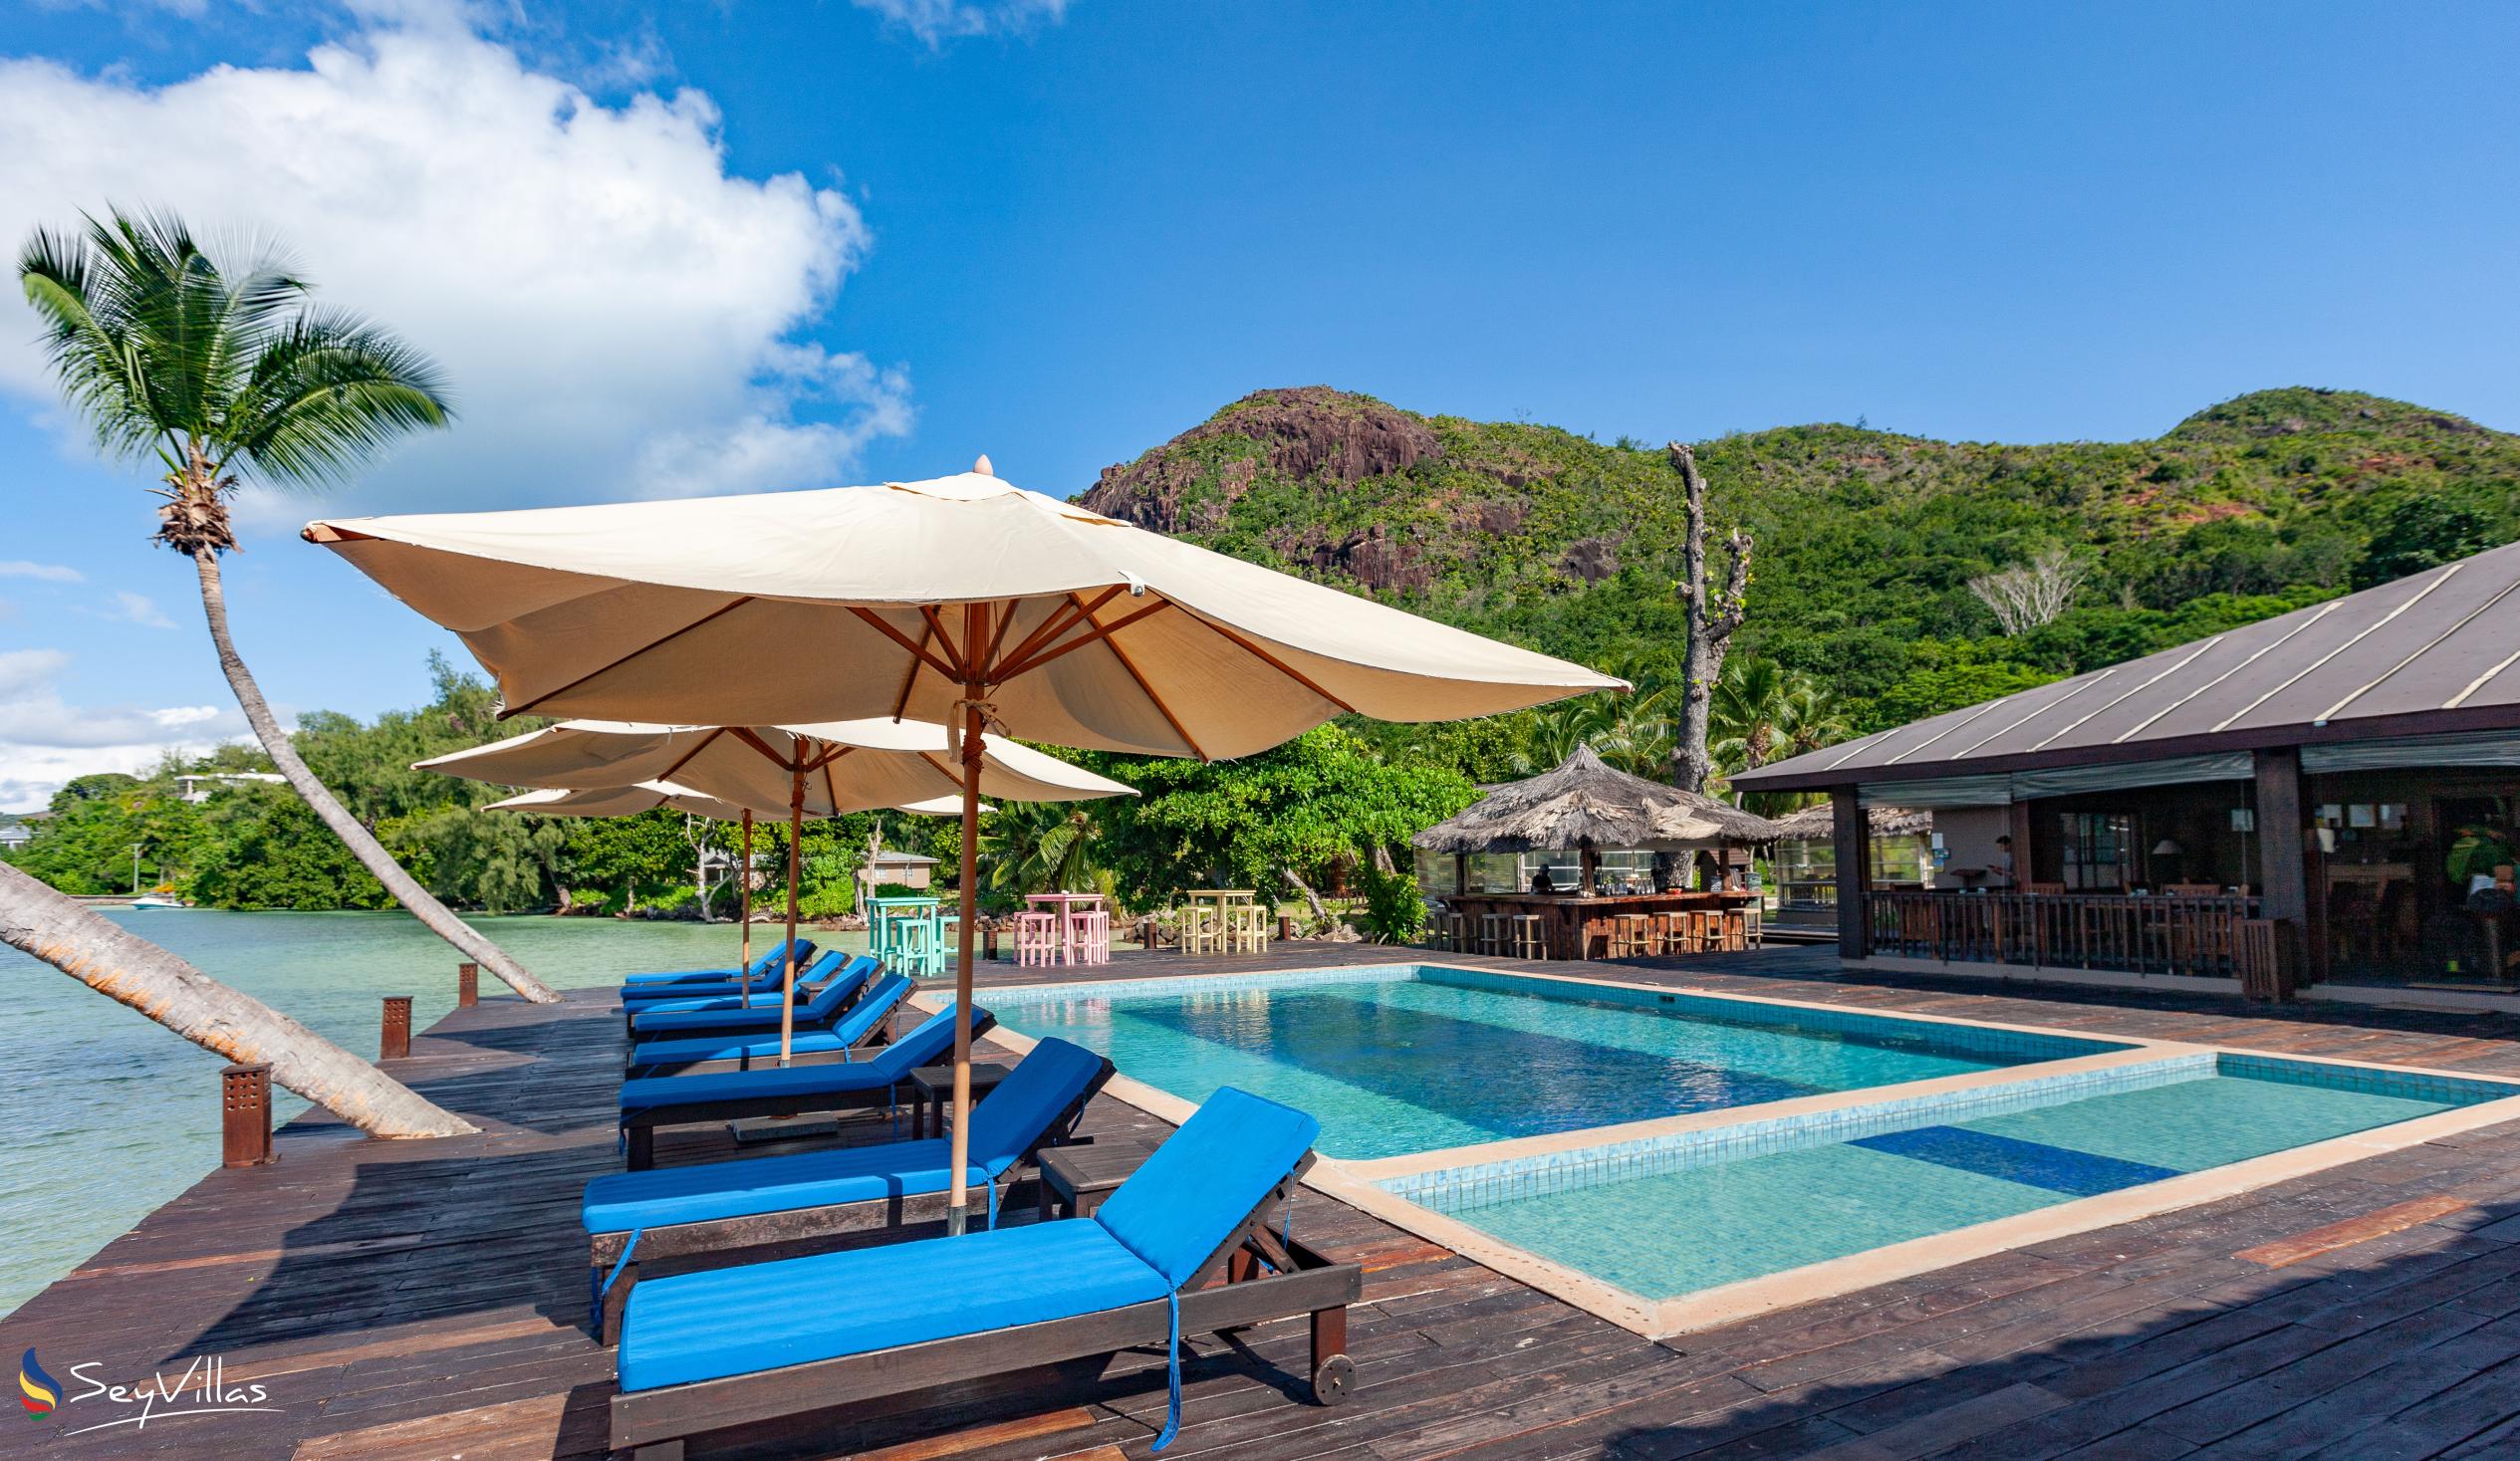 Photo 4: Le Vasseur La Buse Eco Resort - Outdoor area - Praslin (Seychelles)